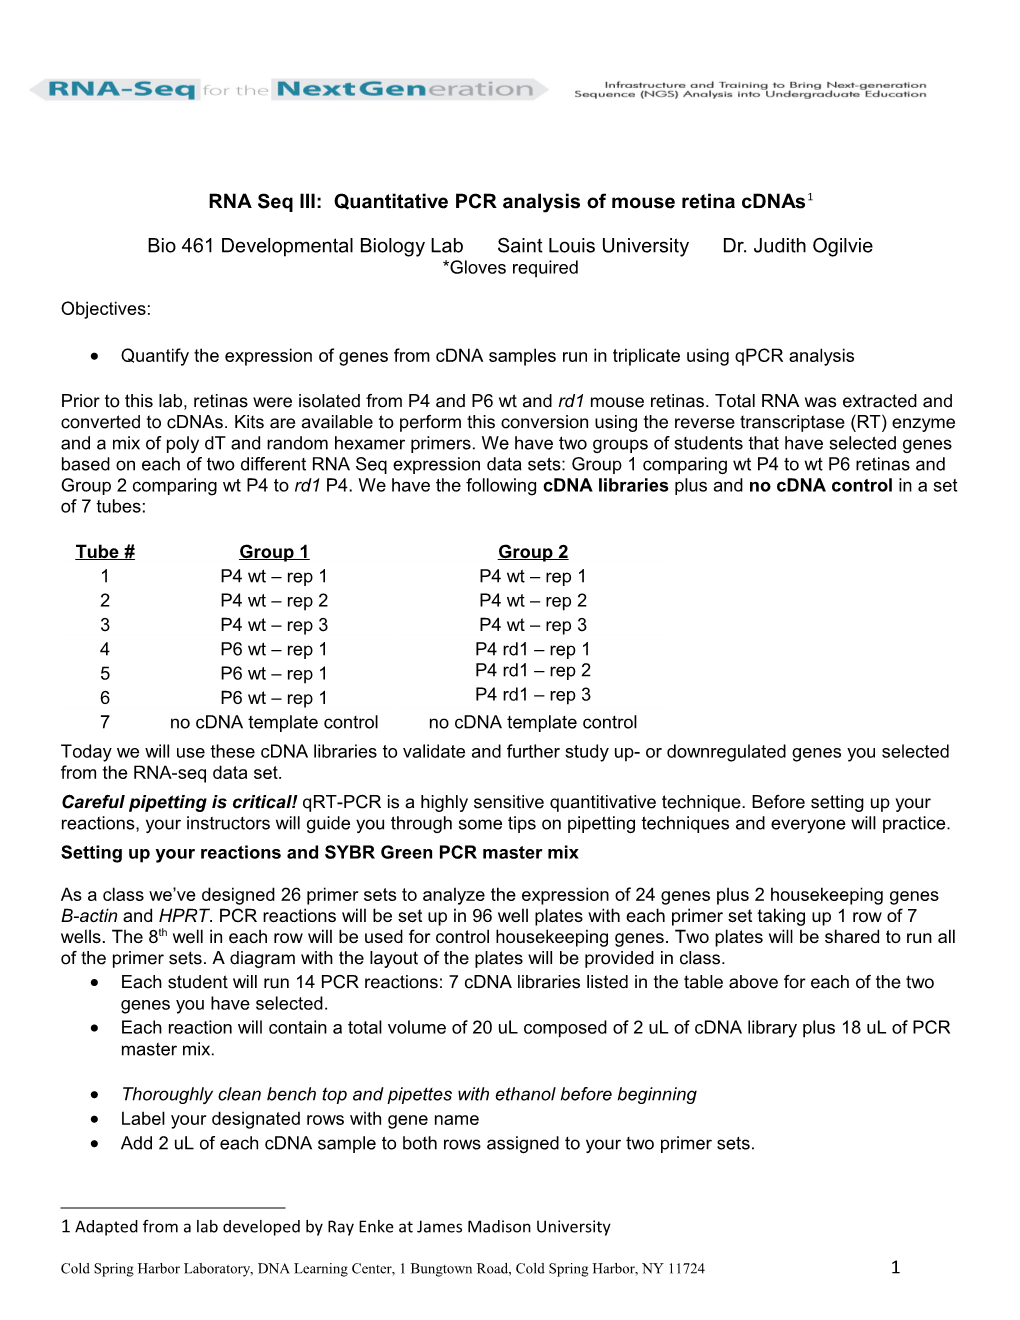 RNA Seq III: Quantitative PCR Analysis of Mouse Retina Cdnas 1